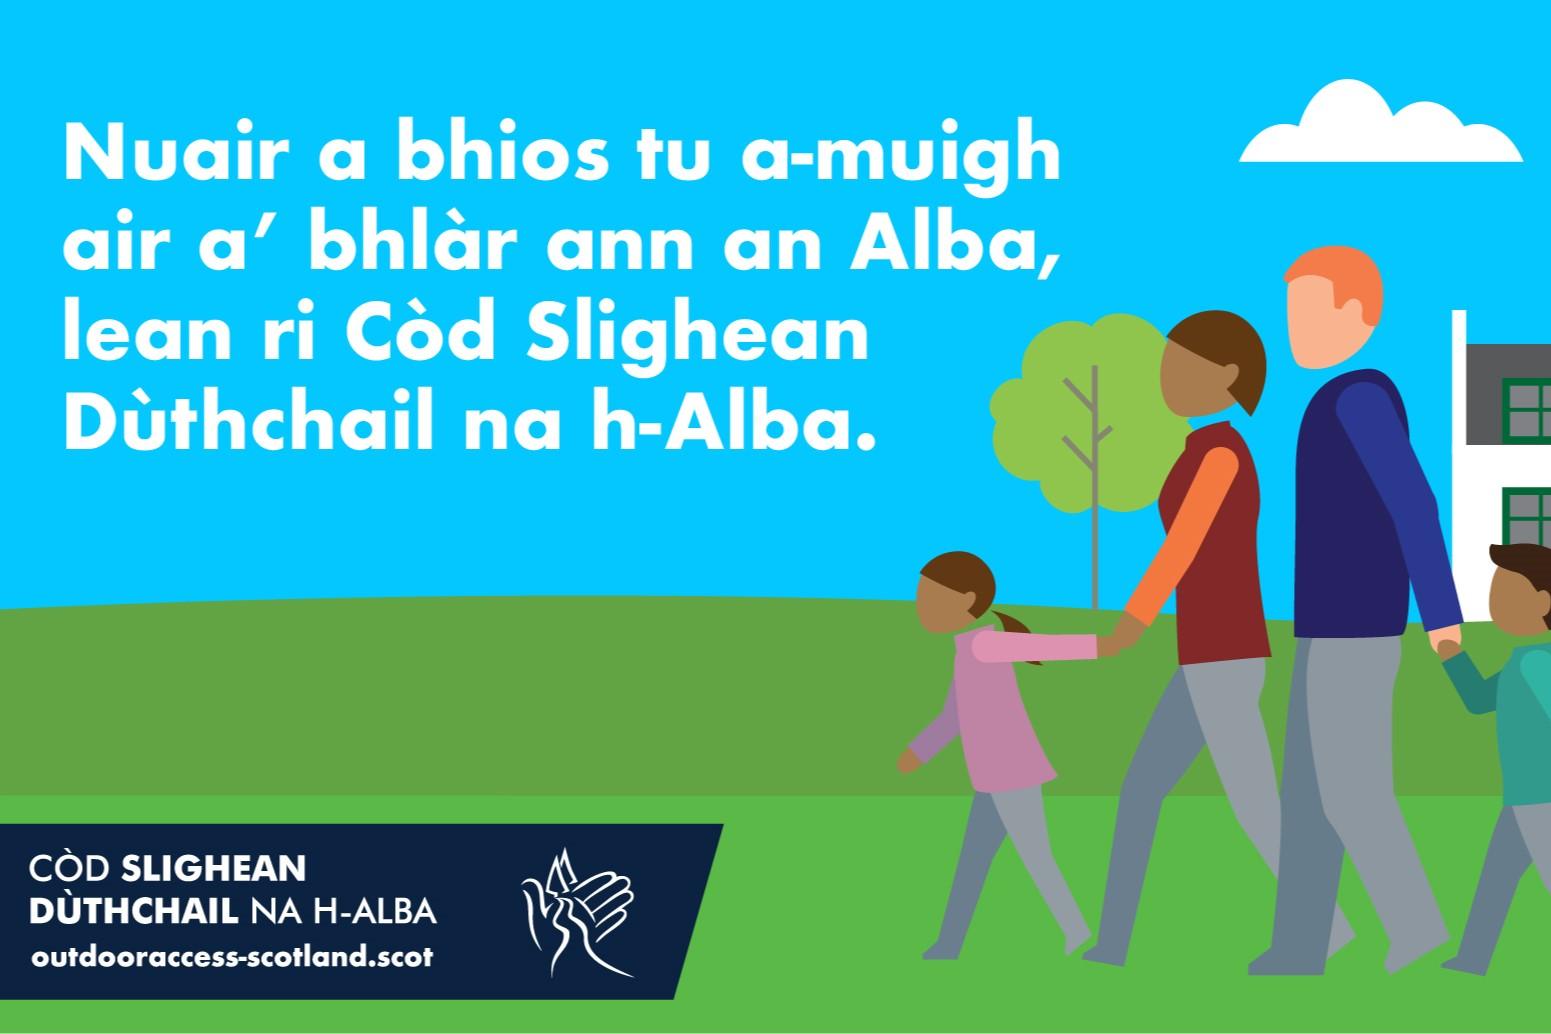 Text on illustration: Nuair a bhios tu a-muigh air a’ bhlàr ann an Alba, lean ri Còd Slighean Dùthchail na h-Alba.